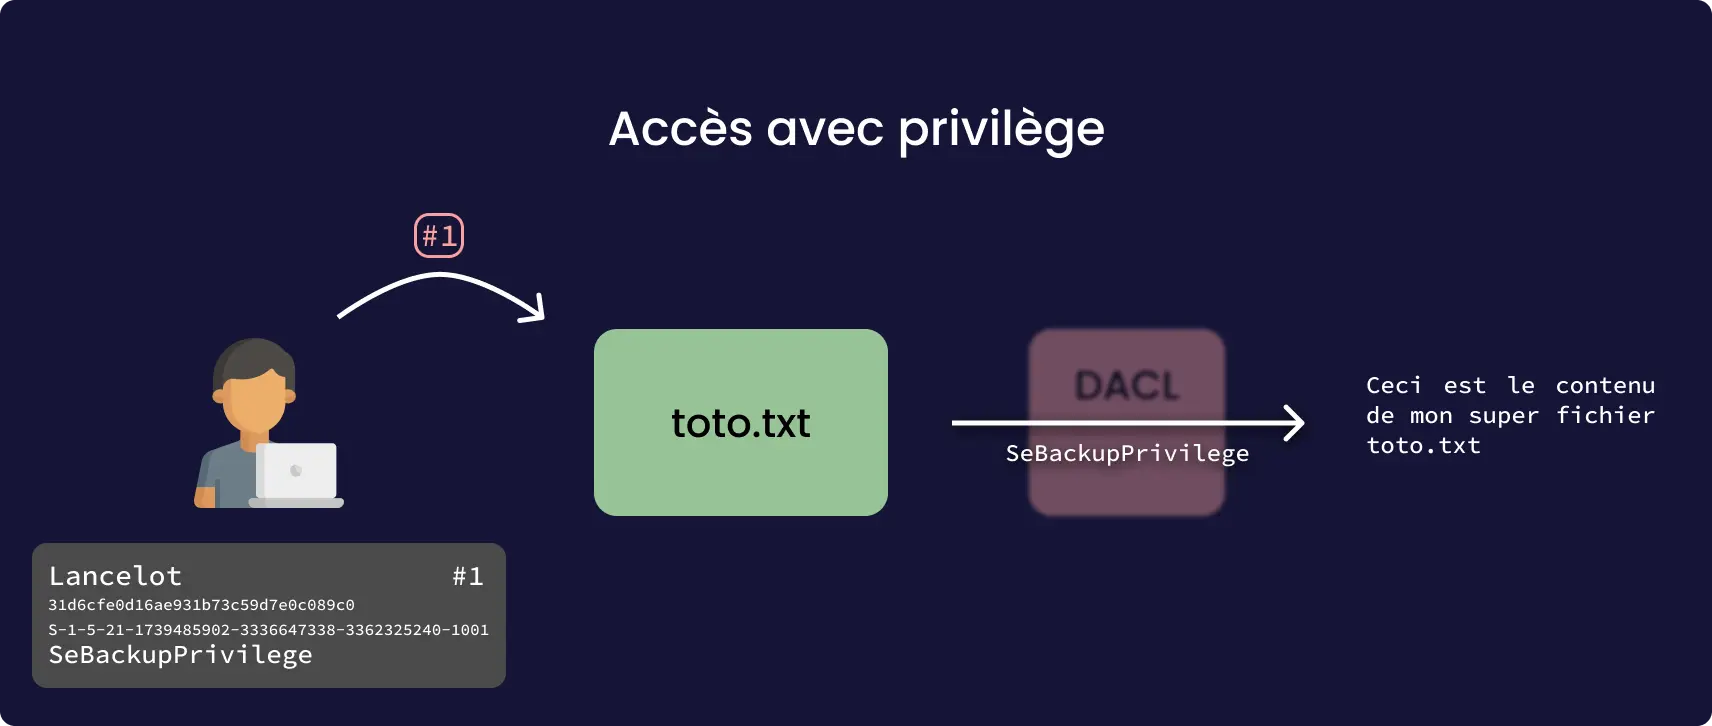 Si un privilège est présent comme SeBackupPrivilege, l'étape de comparaison avec la DACL n'est pas effectuée